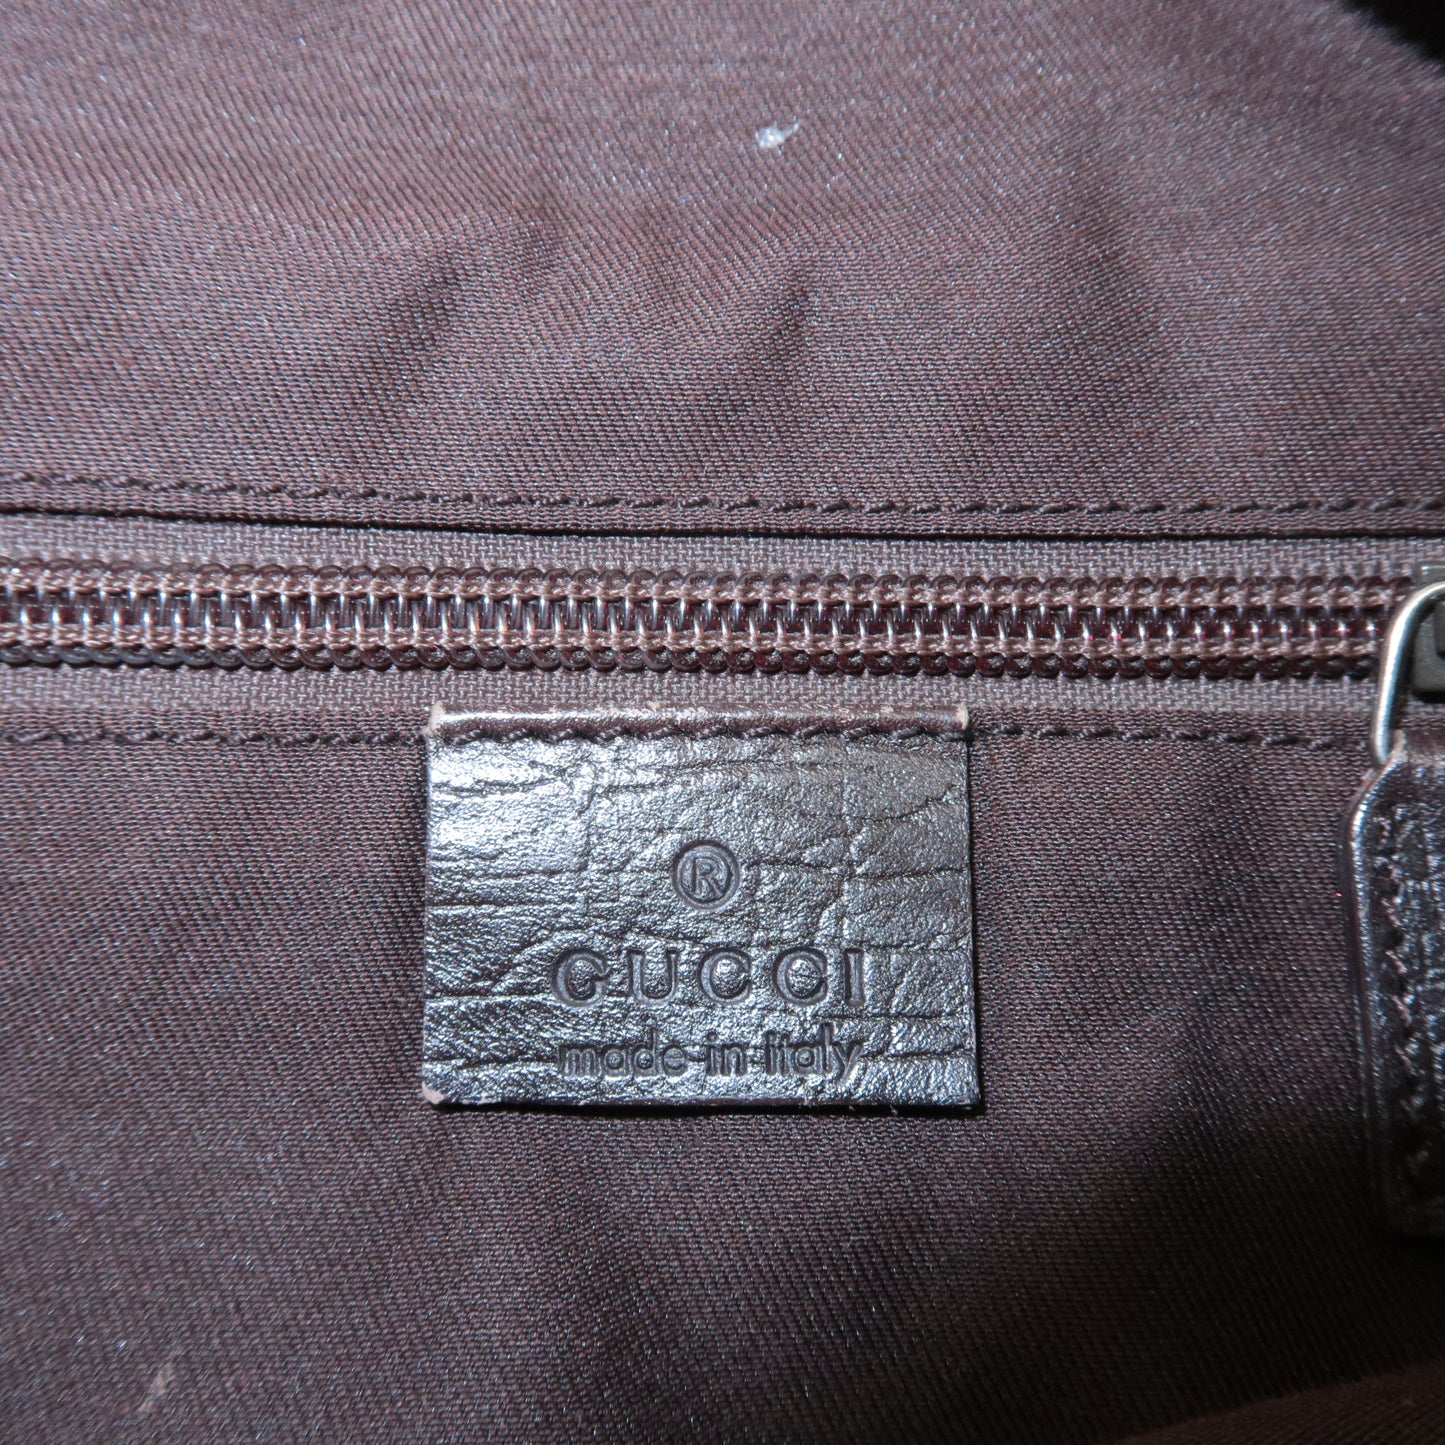 GUCCI GG Supreme Leather Shoulder Bag Beige Brown 141626